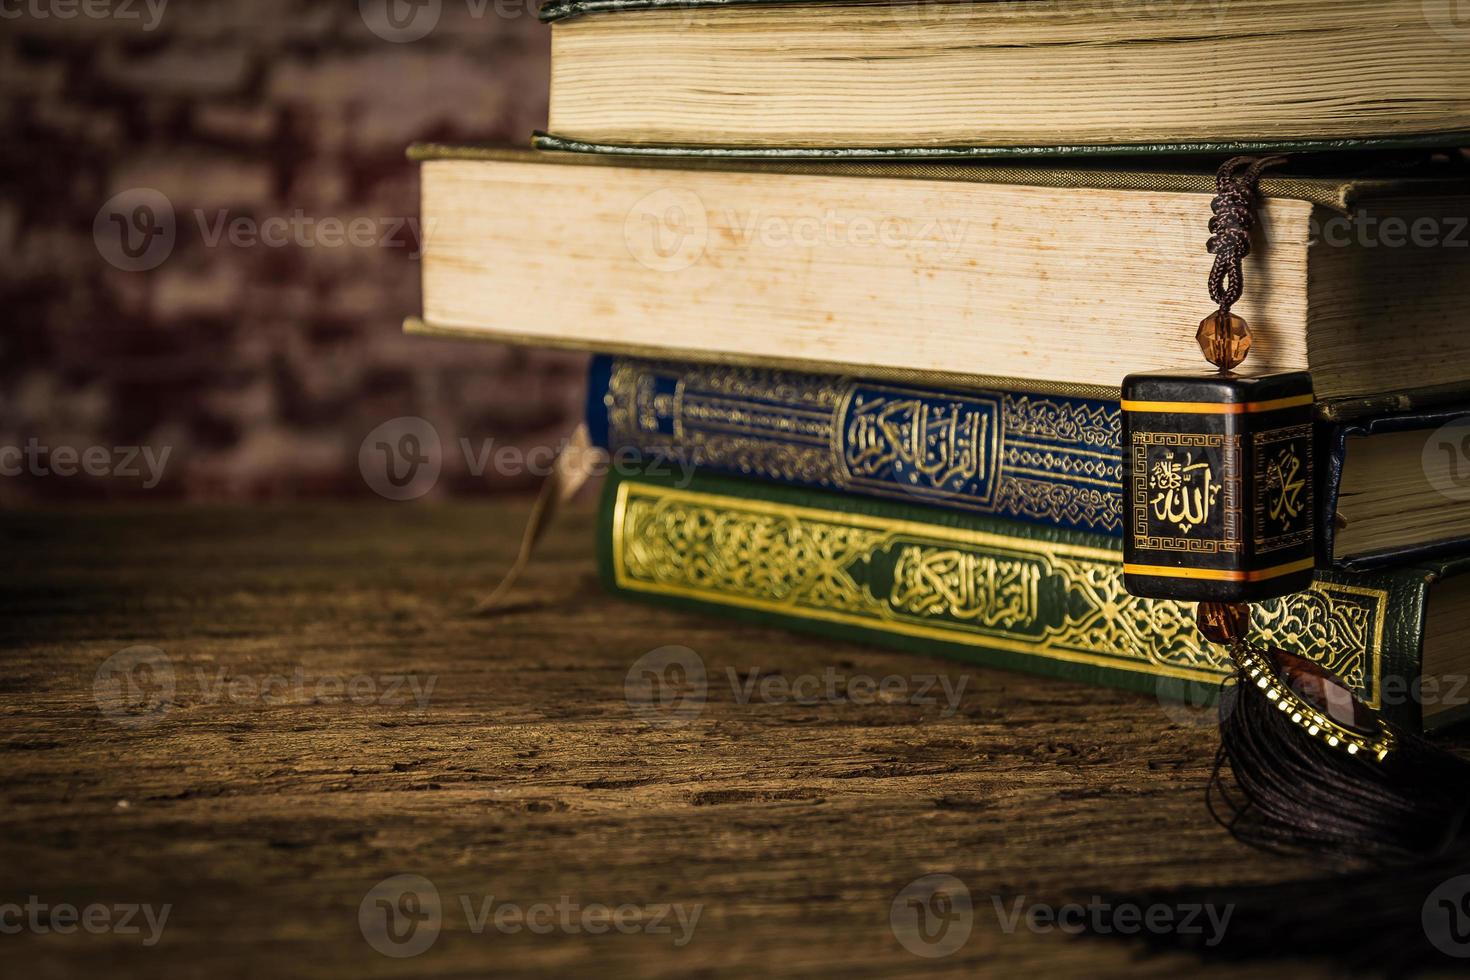 allah deus do islã com alcorão - livro sagrado dos muçulmanos item público de todos os muçulmanos na mesa ainda vida foto